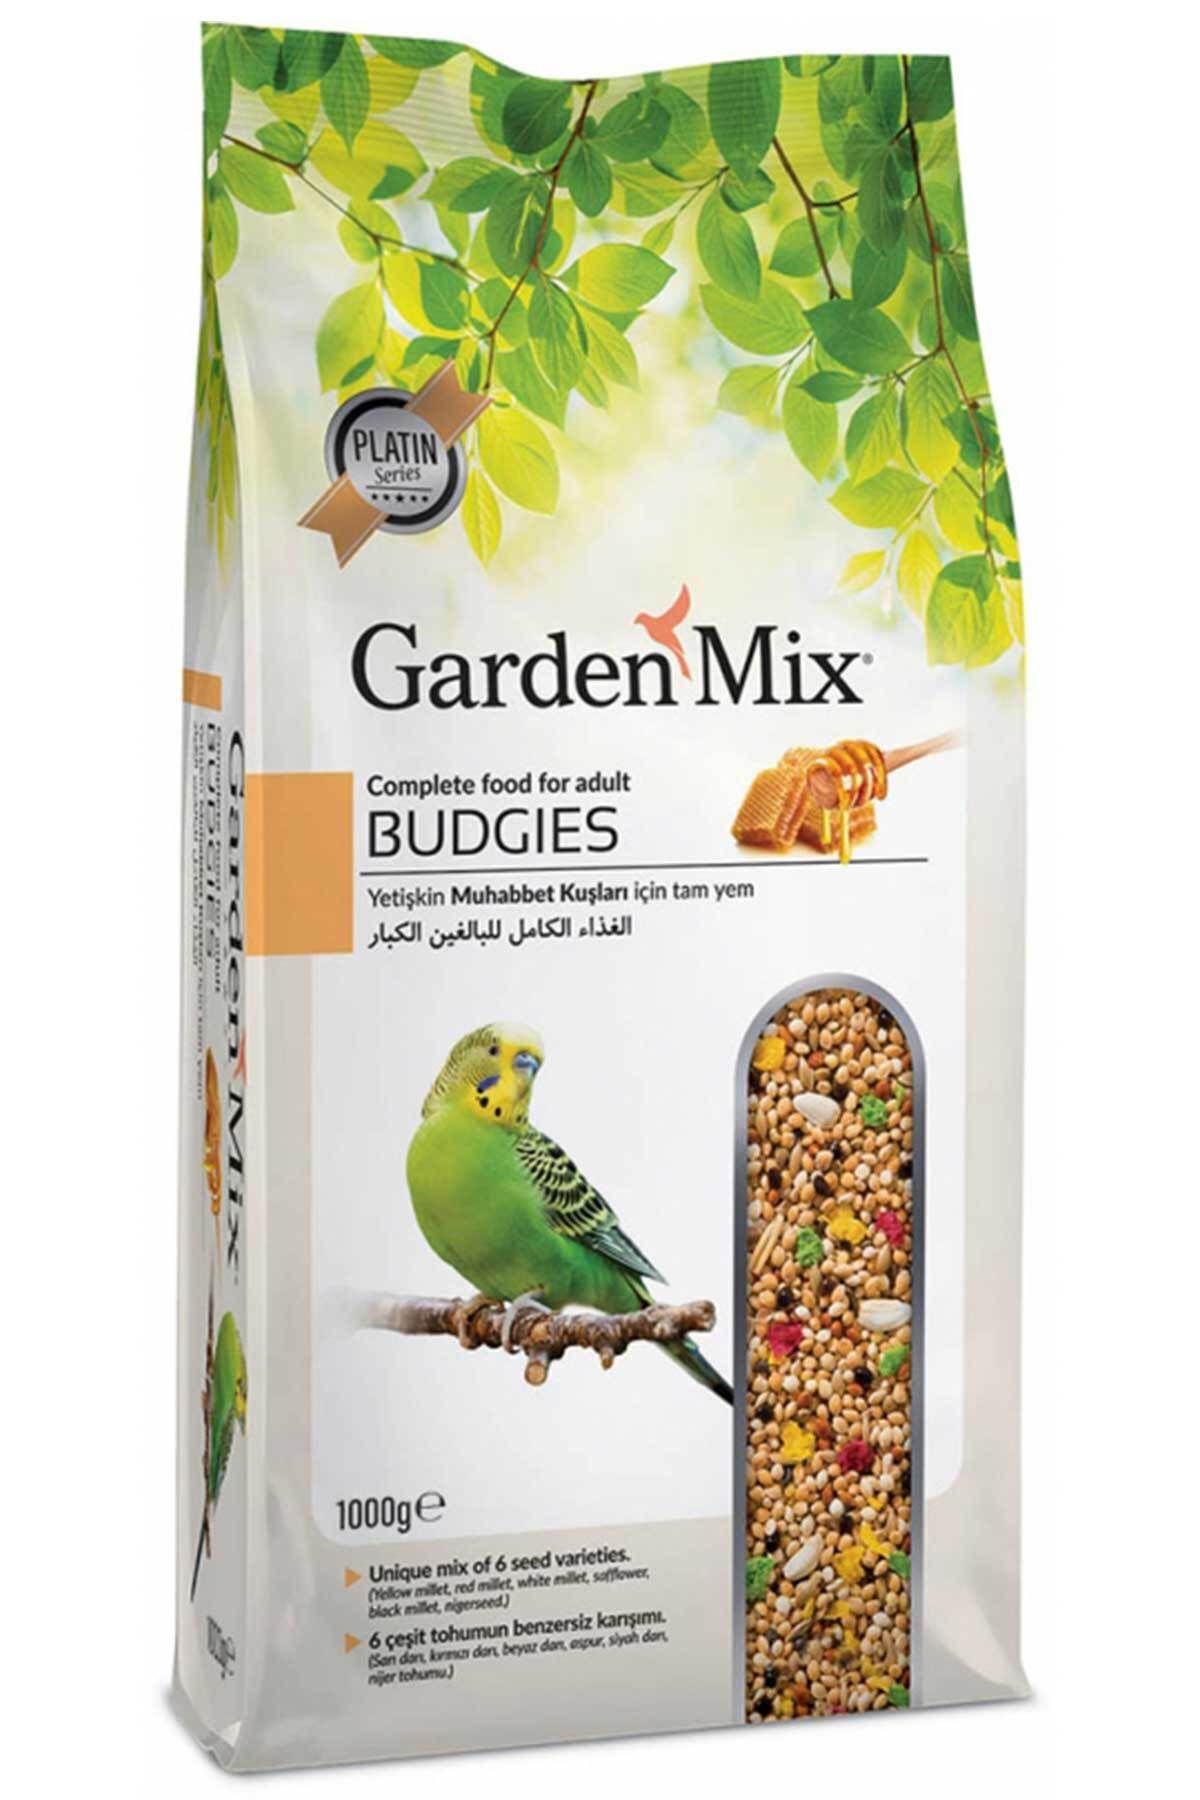 Gardenmax Yetişkin Muhabbet Kuşu Yemi muhabbet kuşu maması protein mineral muhabbet kuşu yem kuş yem 1 kg